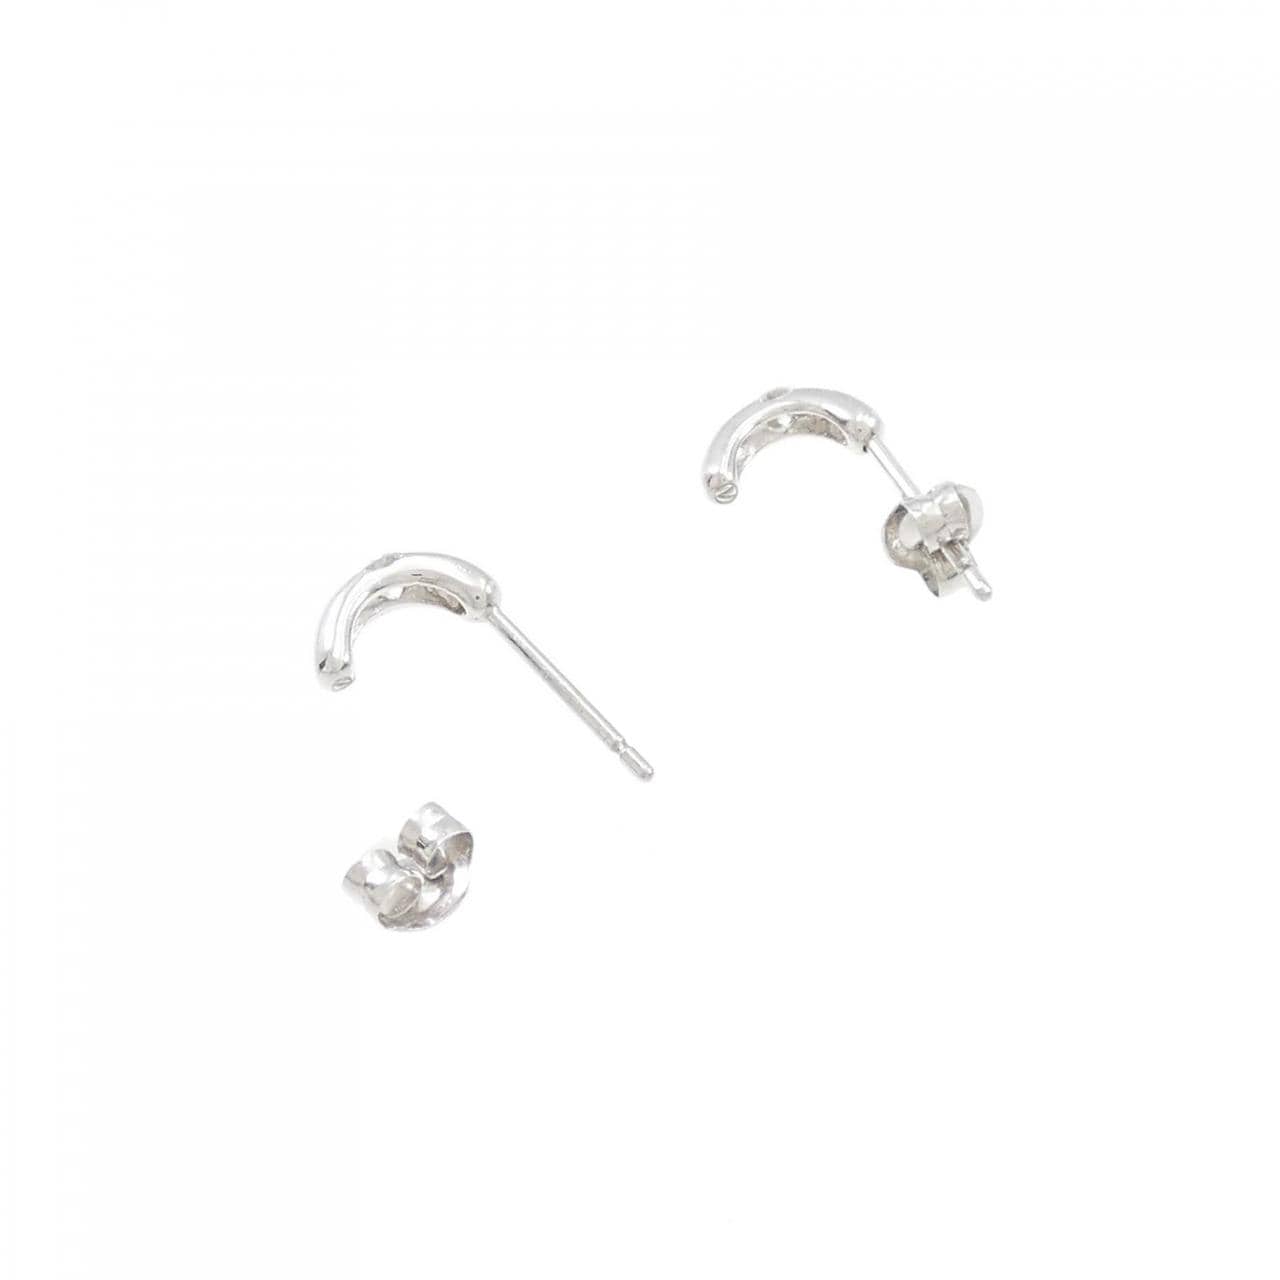 PT Diamond earrings